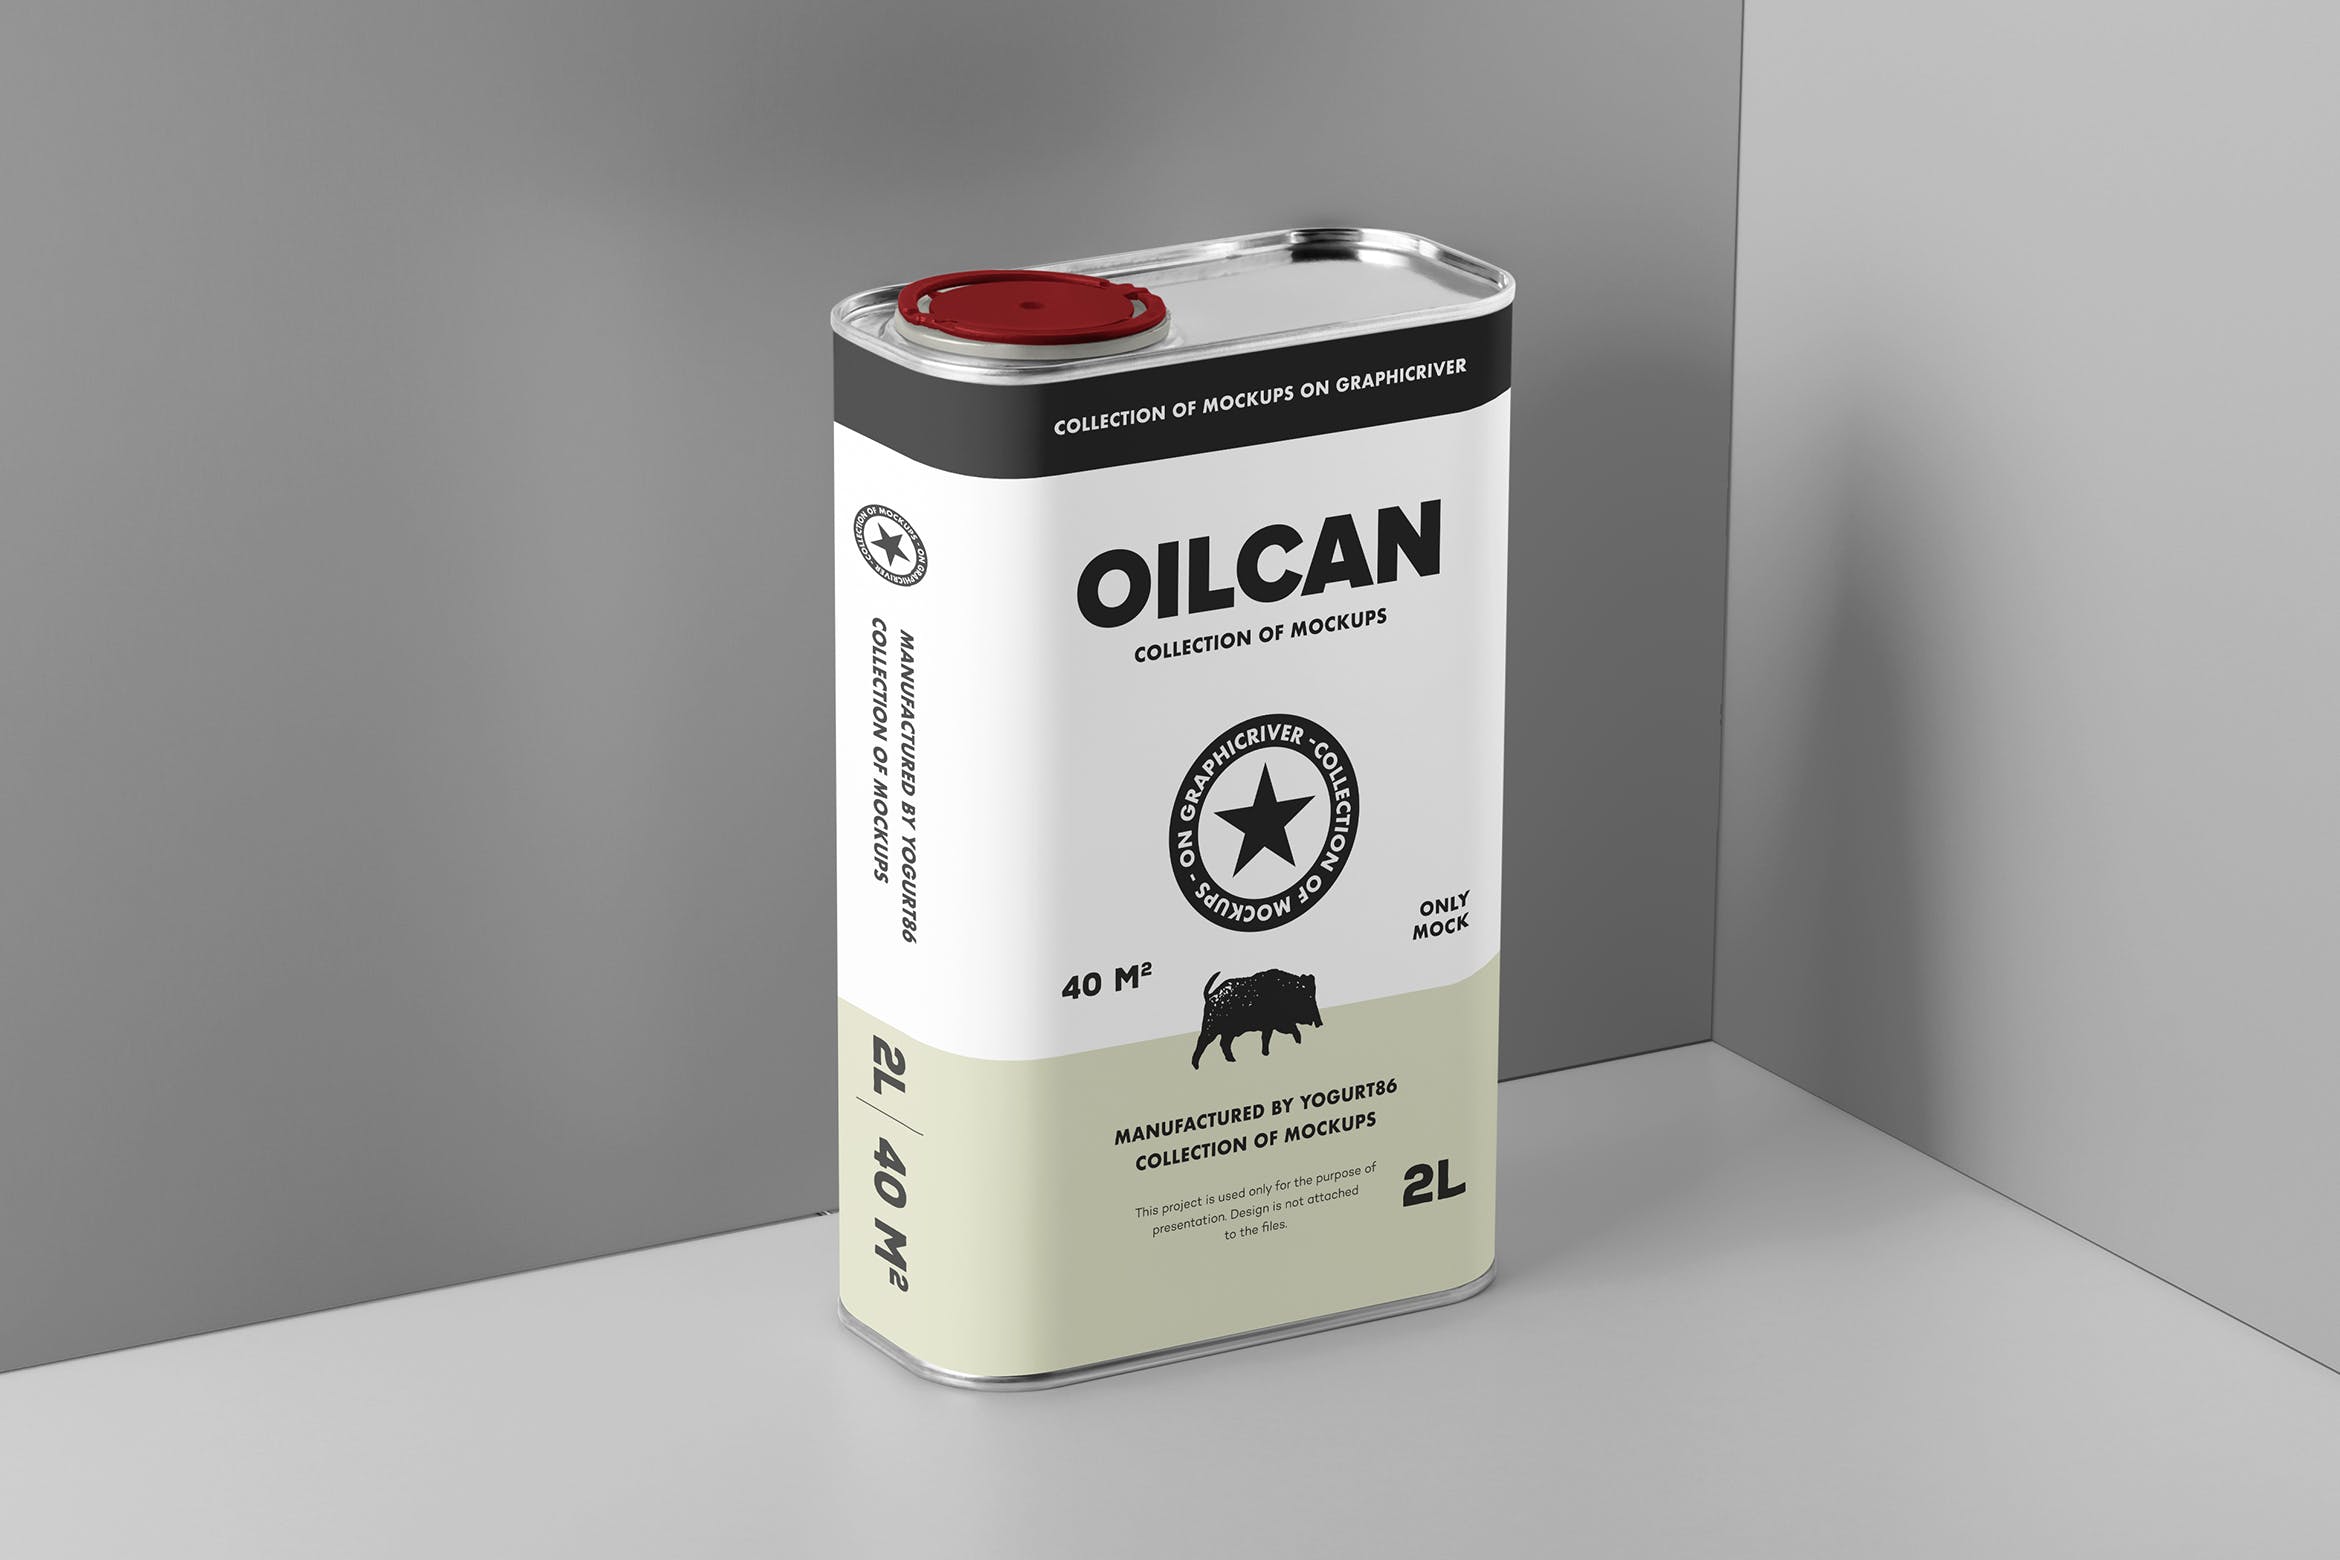 方形油罐外观设计图第一素材精选模板 Oil Can Mock-up插图